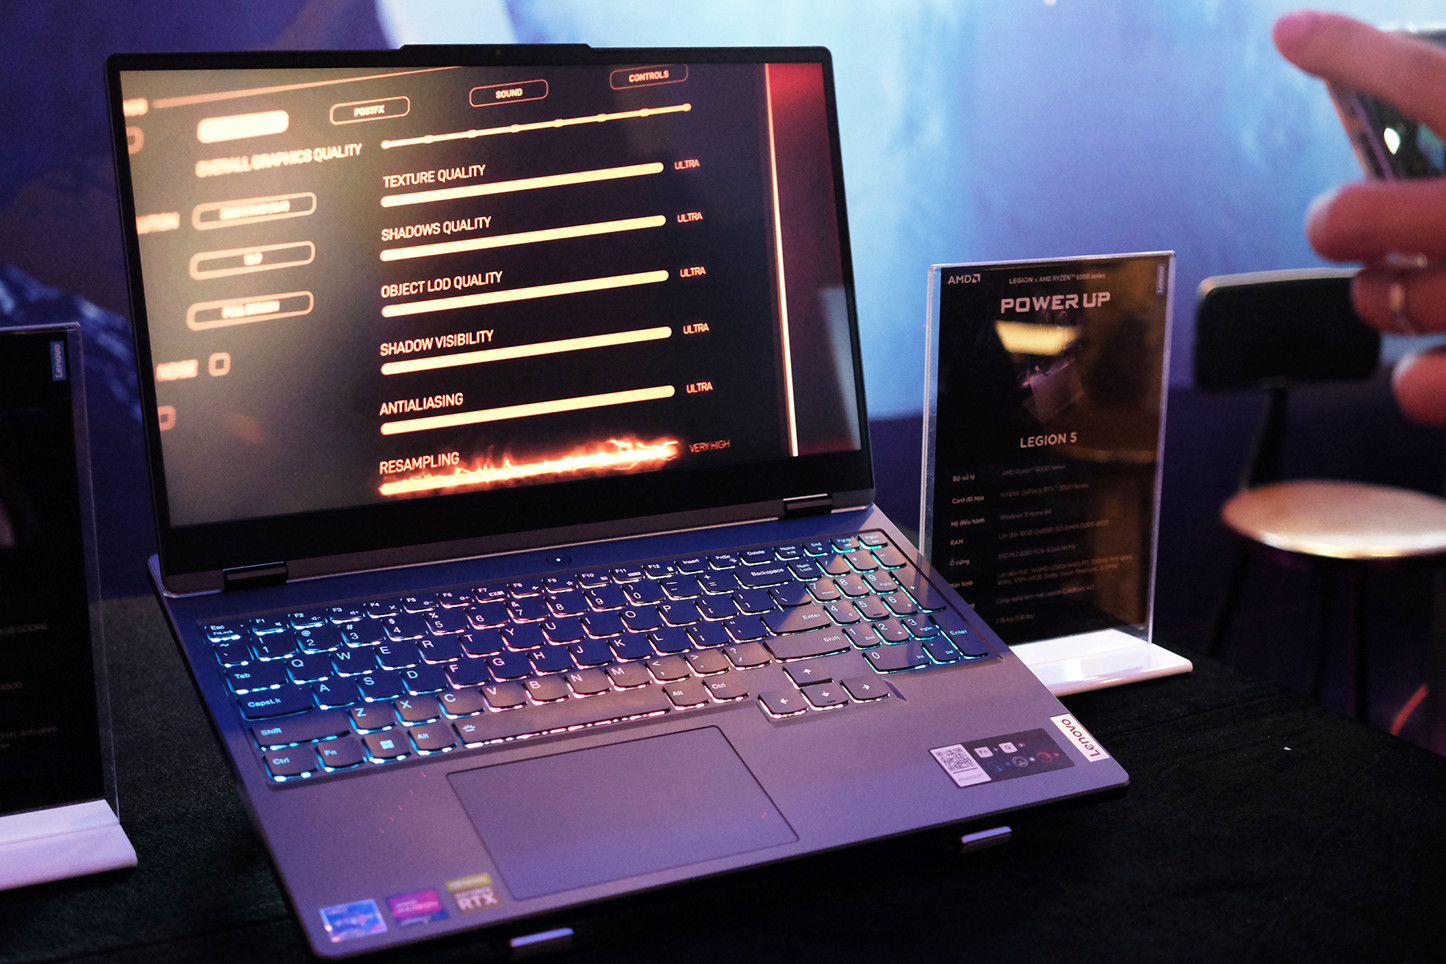 Khan hiếm chip giảm, thị trường Việt xuất hiện nhiều mẫu laptop gaming mới